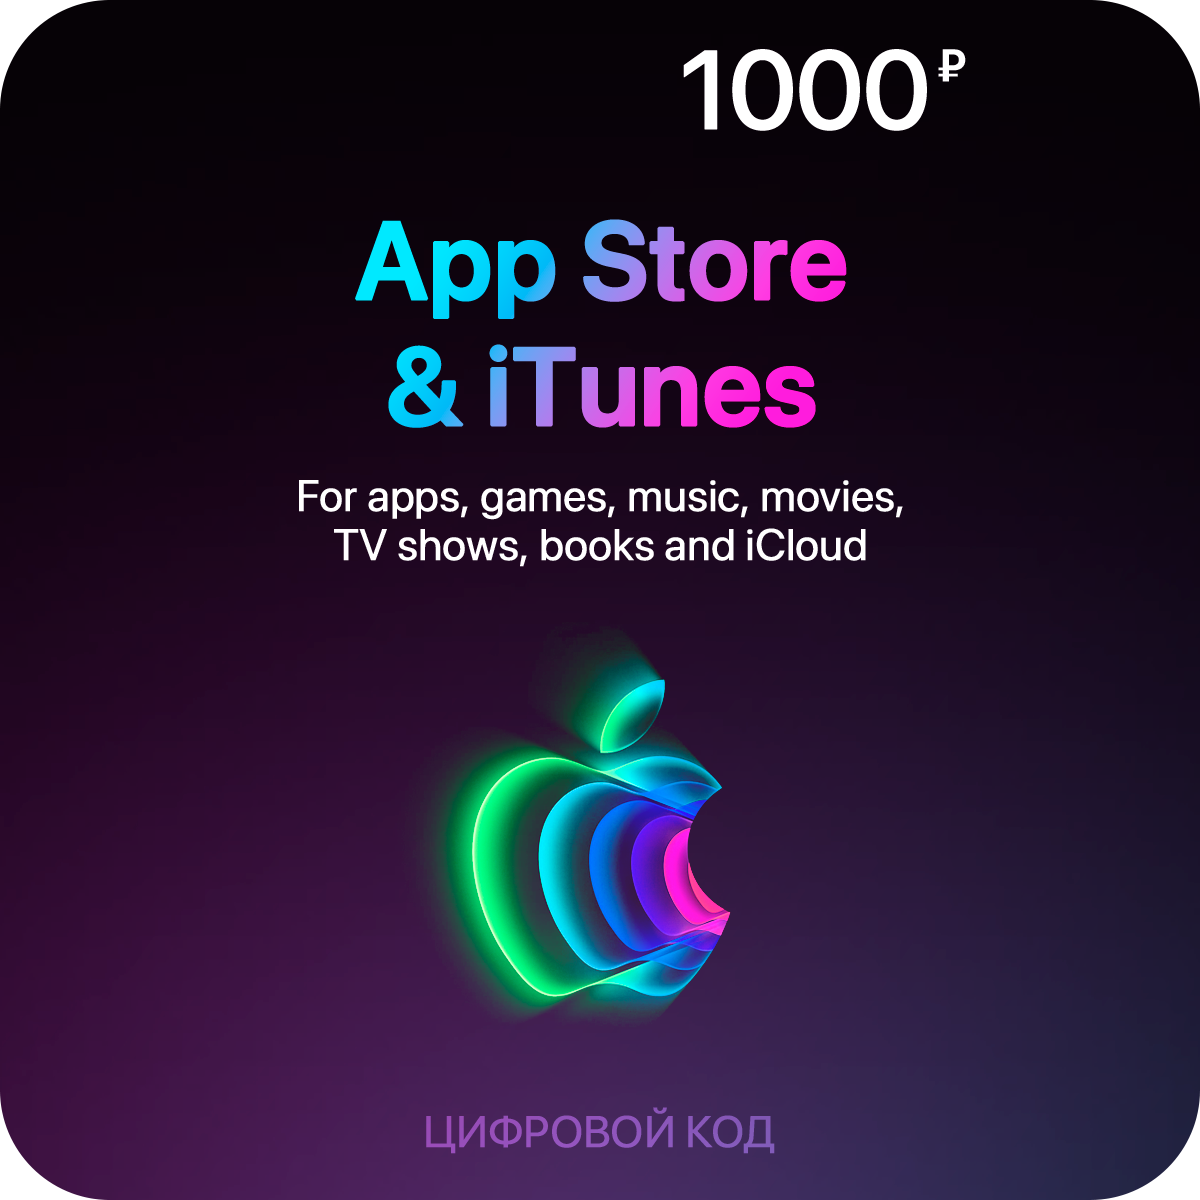 Пополнение счета App Store & iTunes (1000 рублей)